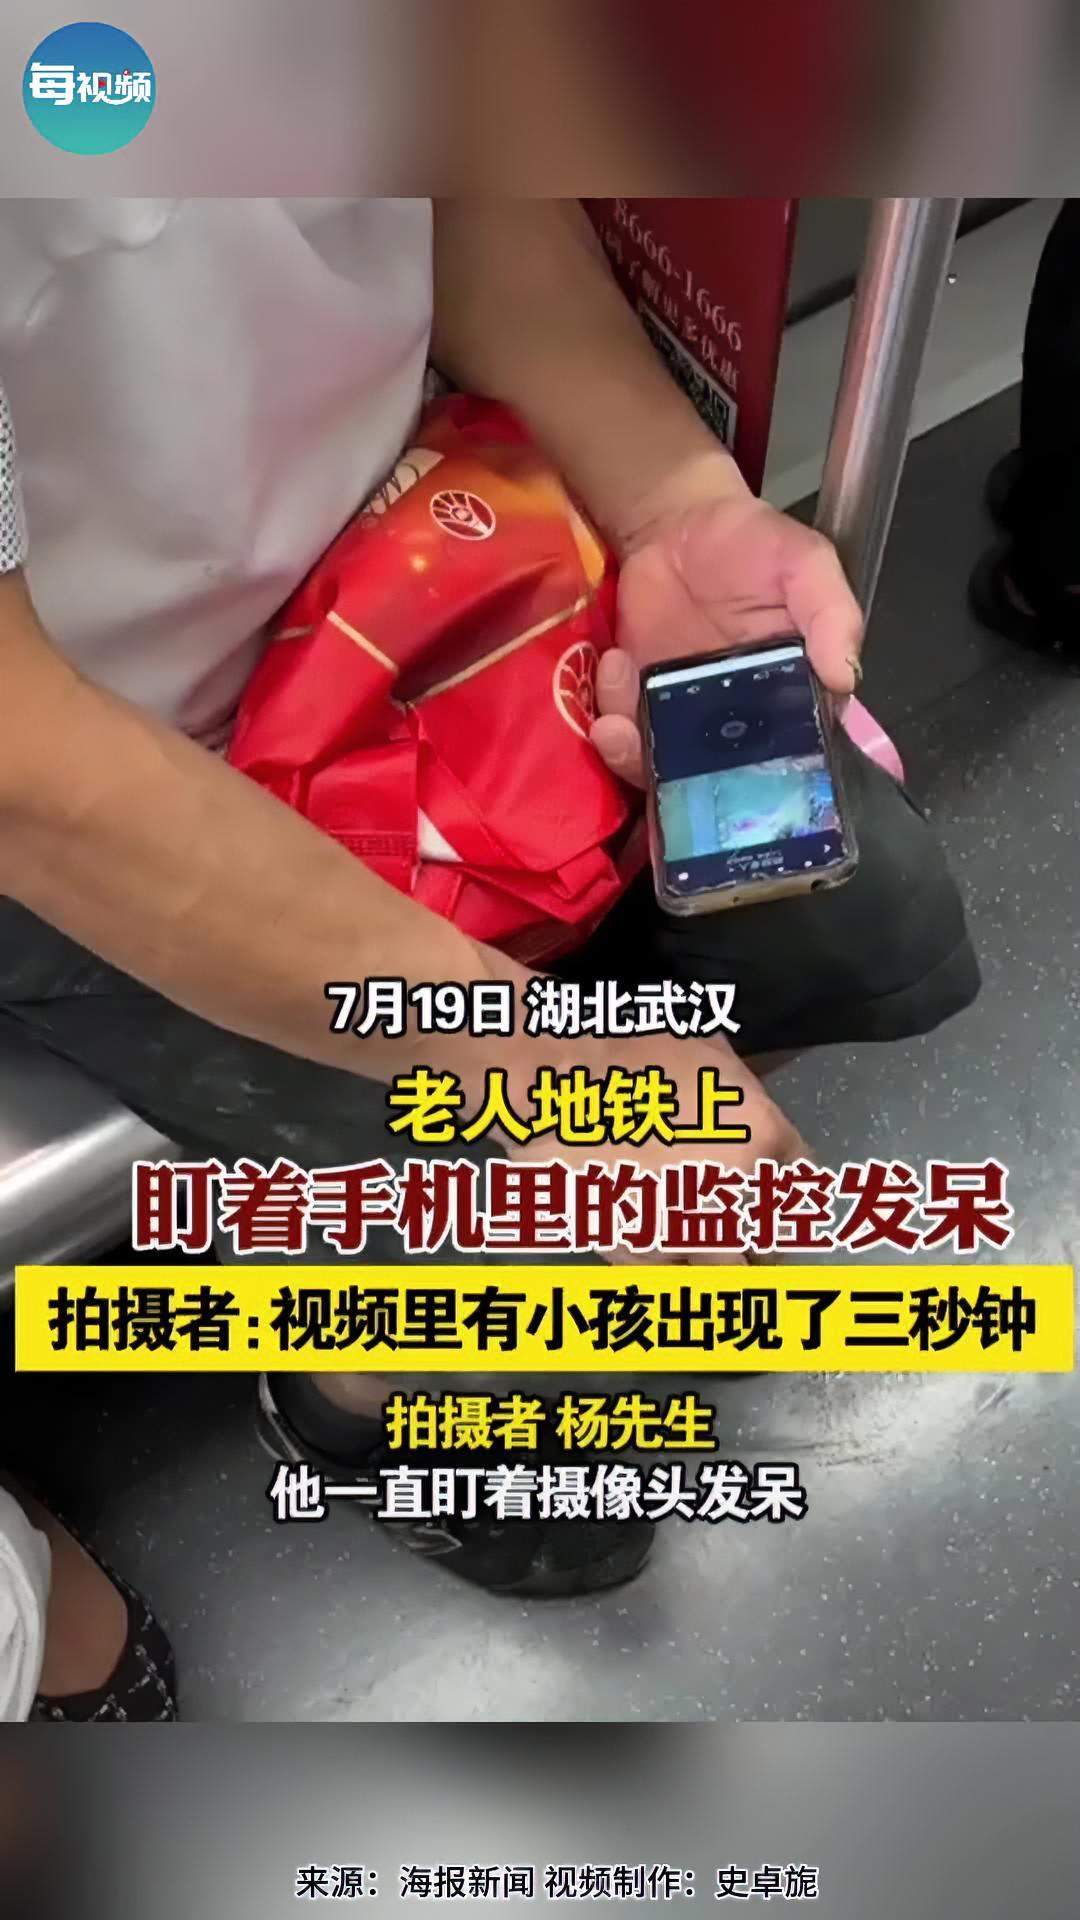 老人地铁上盯着手机里的监控发呆,拍摄者:视频里有小孩出现了3秒